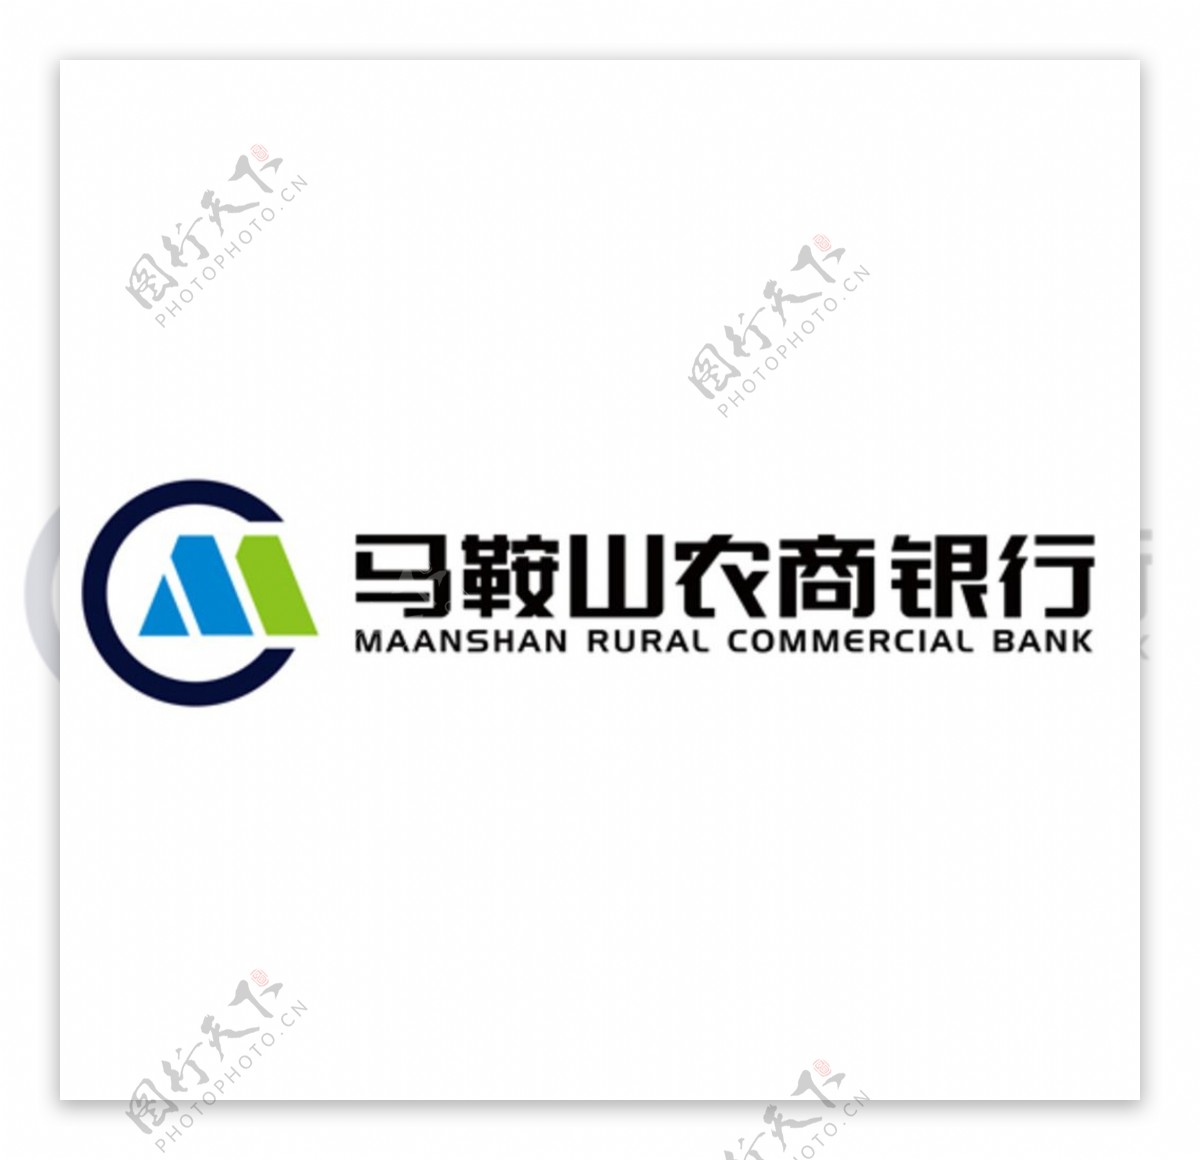 马鞍山农商行logo图片